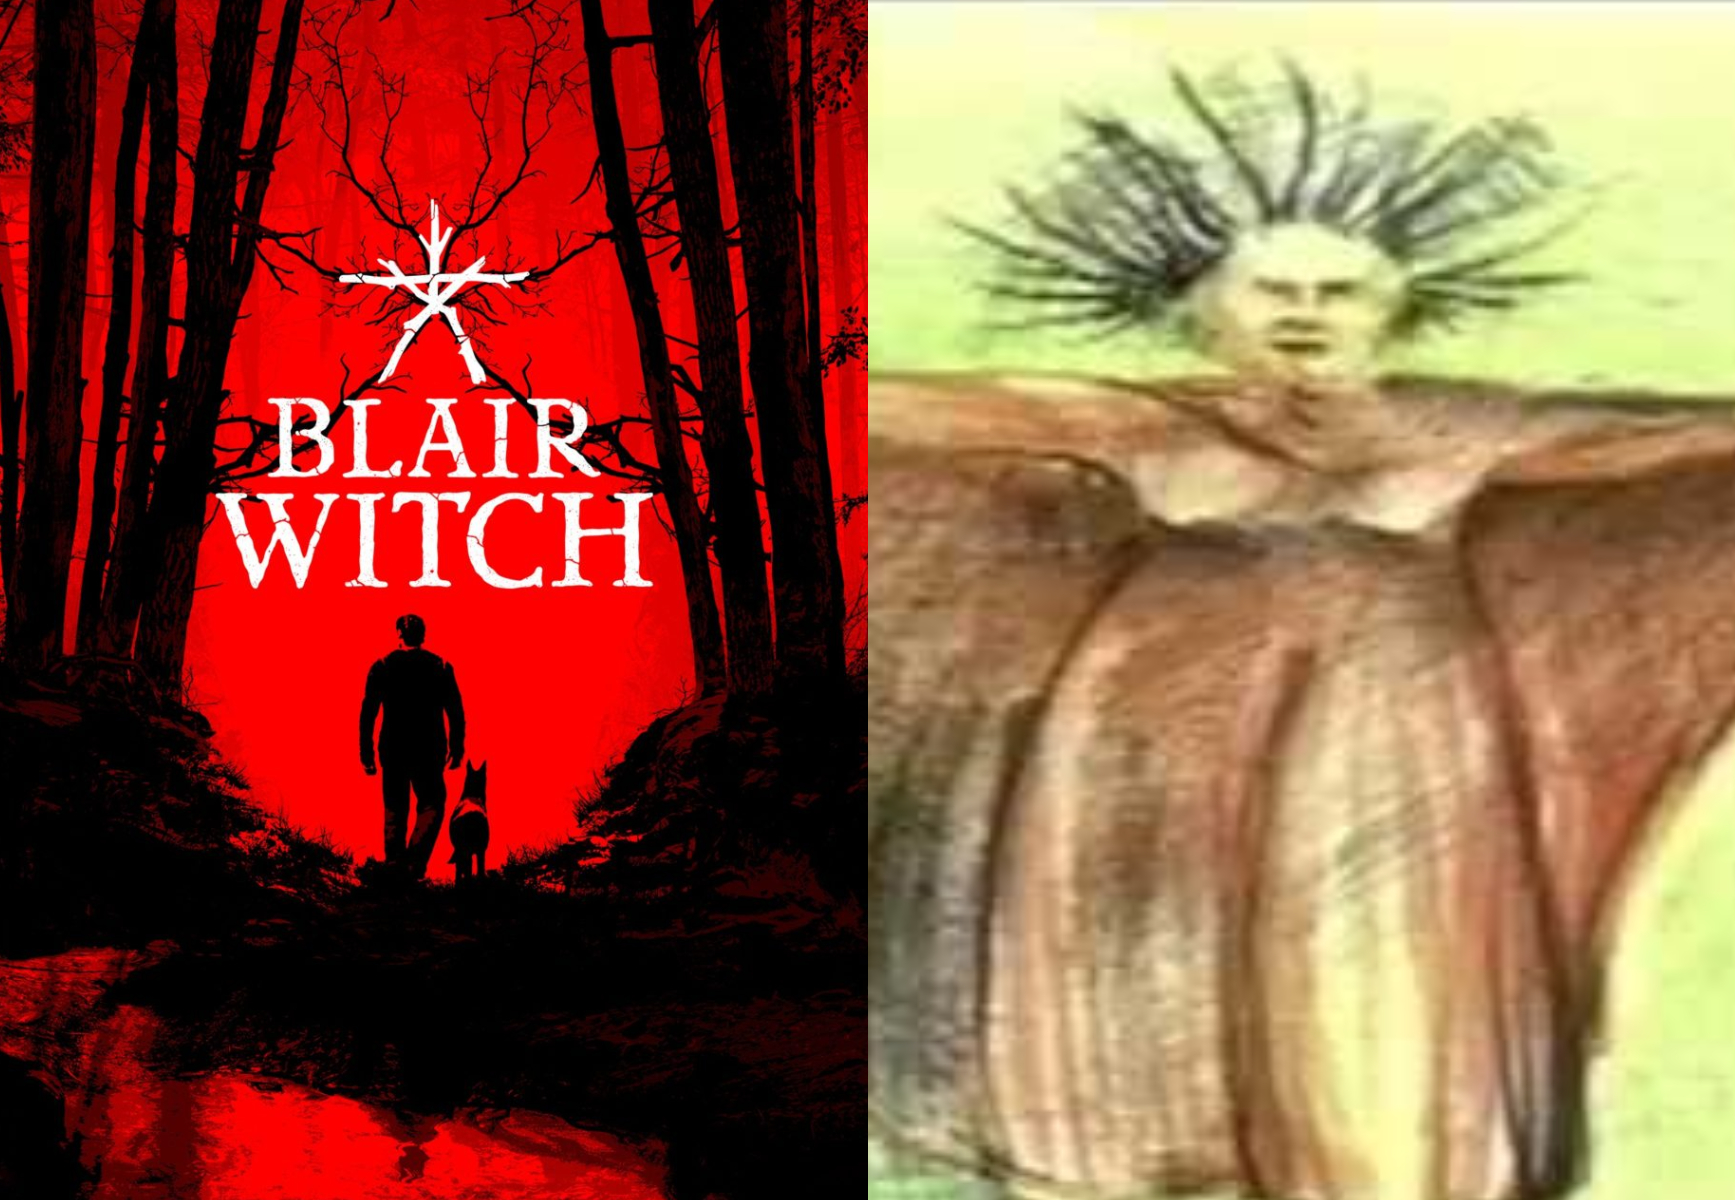 Elly Kedward: Η ιστορία της πραγματικής μάγισσας πίσω από την ανατριχιαστική ταινία The Blair Witch Project